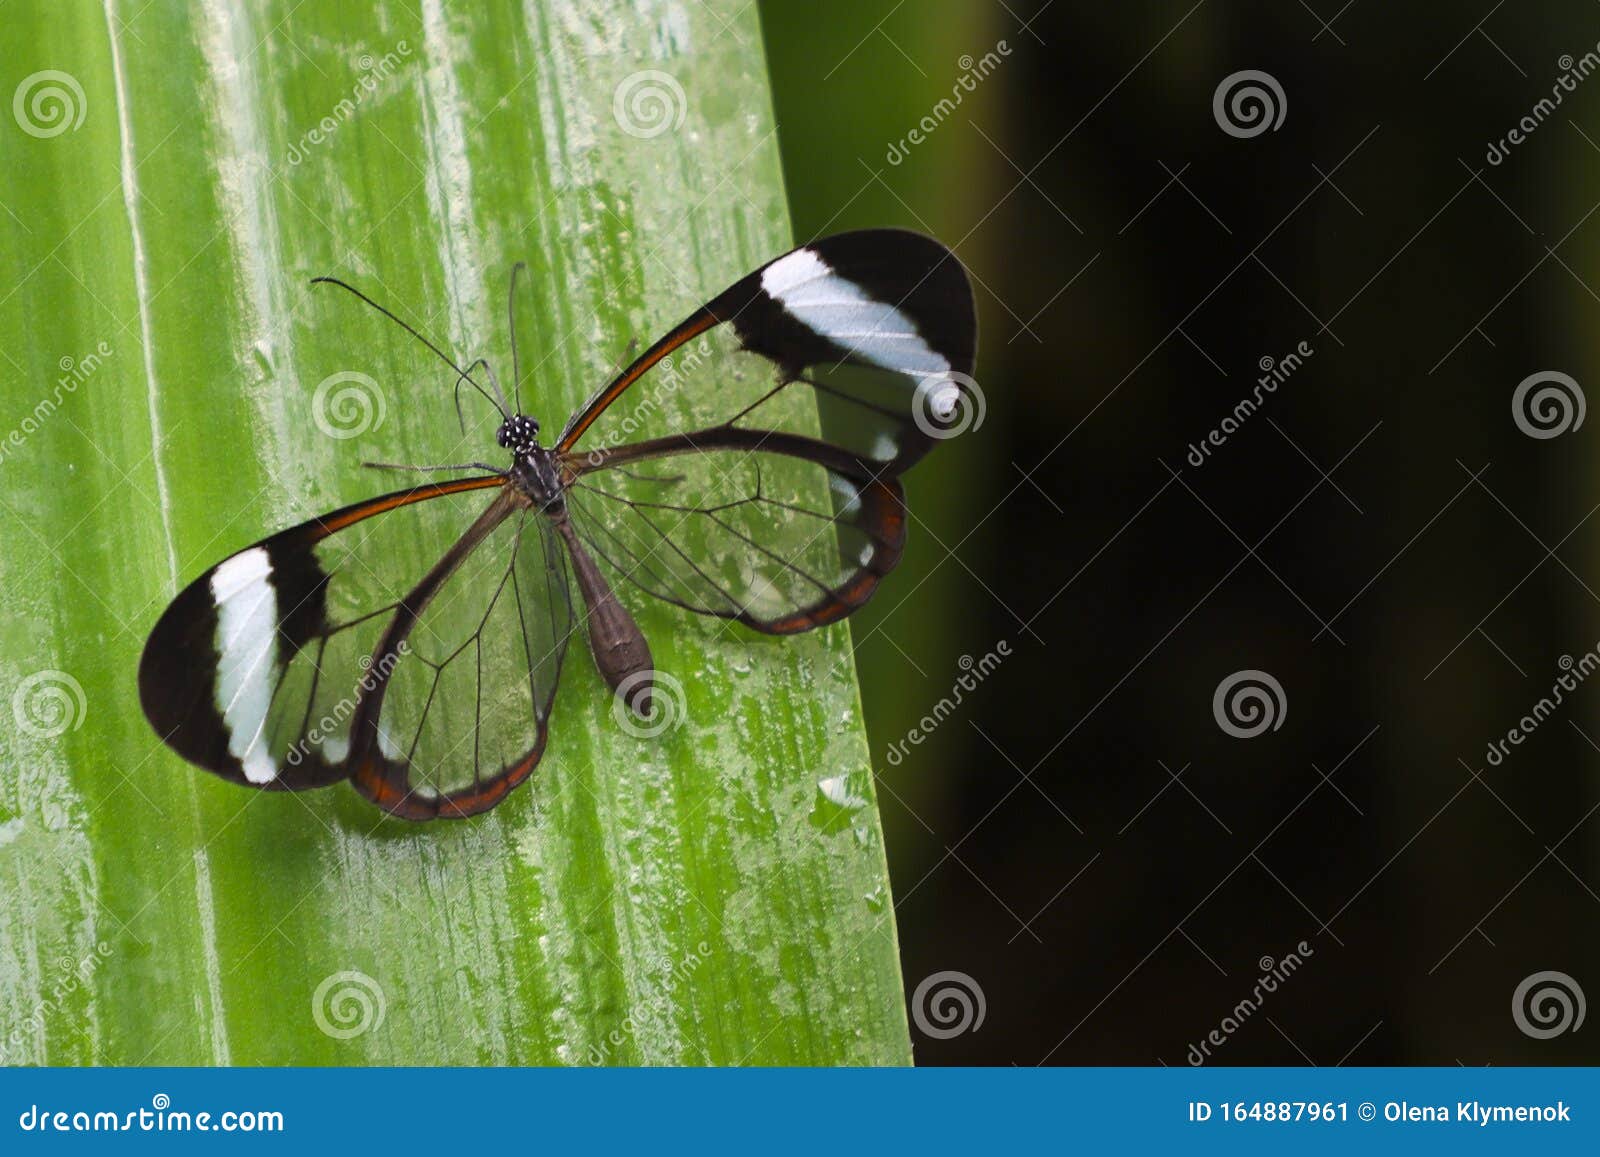 glasswing butterfly greta oto on a green leaf